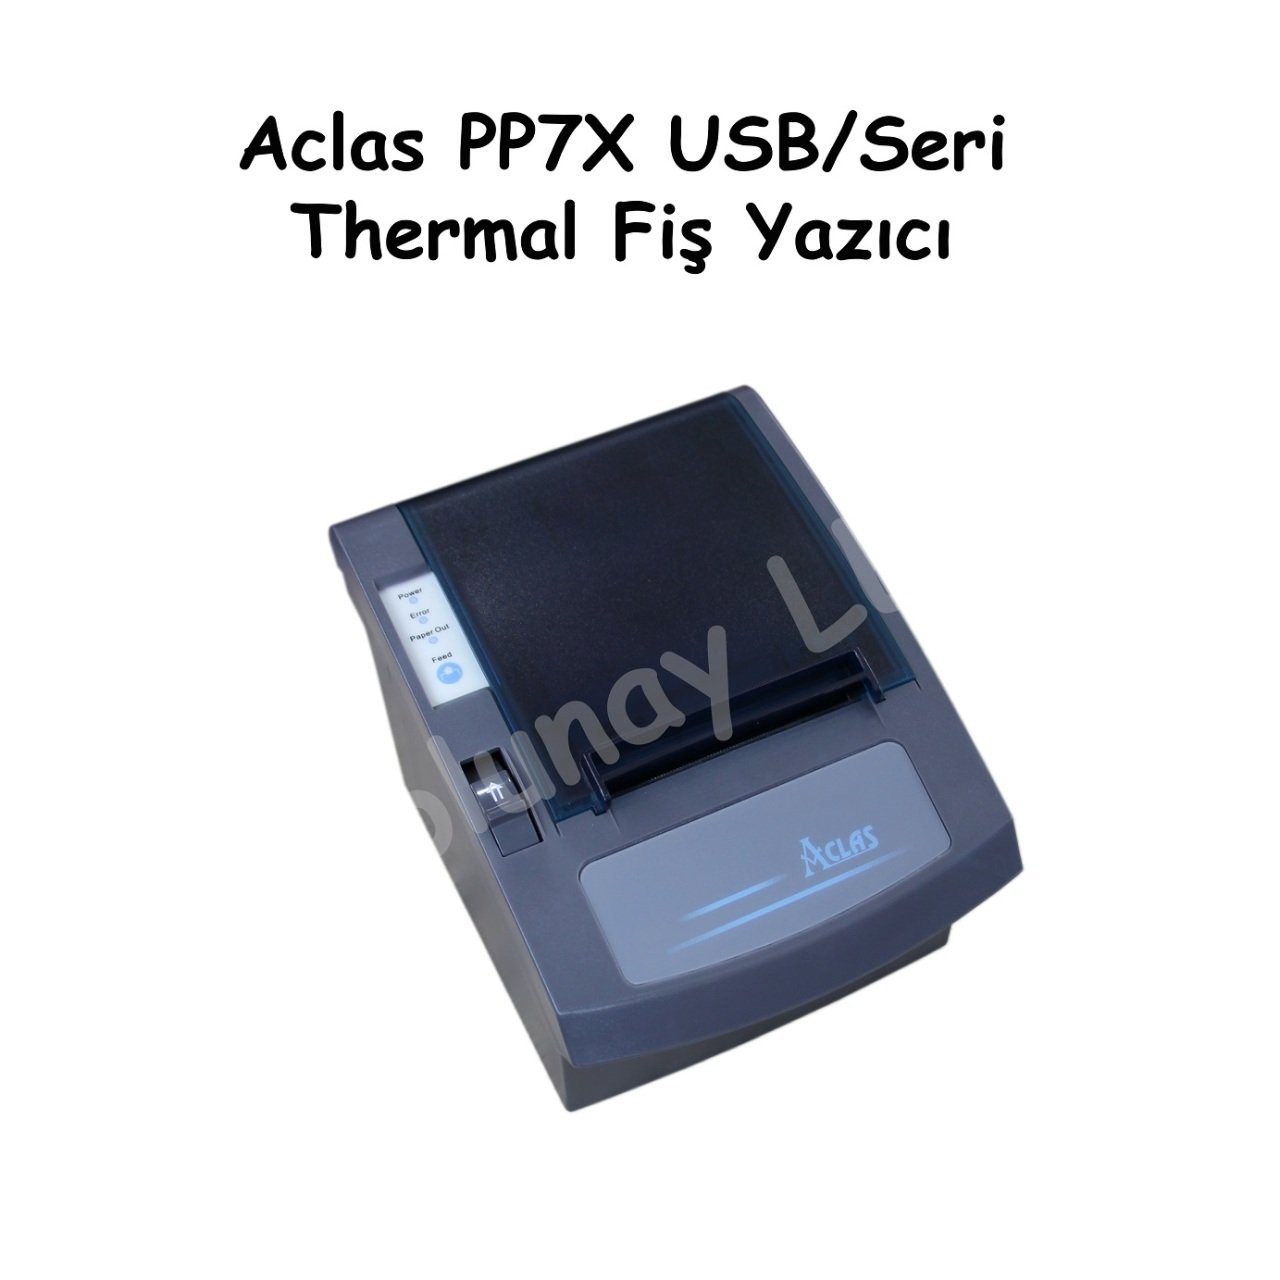 AClas PP7X USB/Seri Thermal Fiş Yazıcı